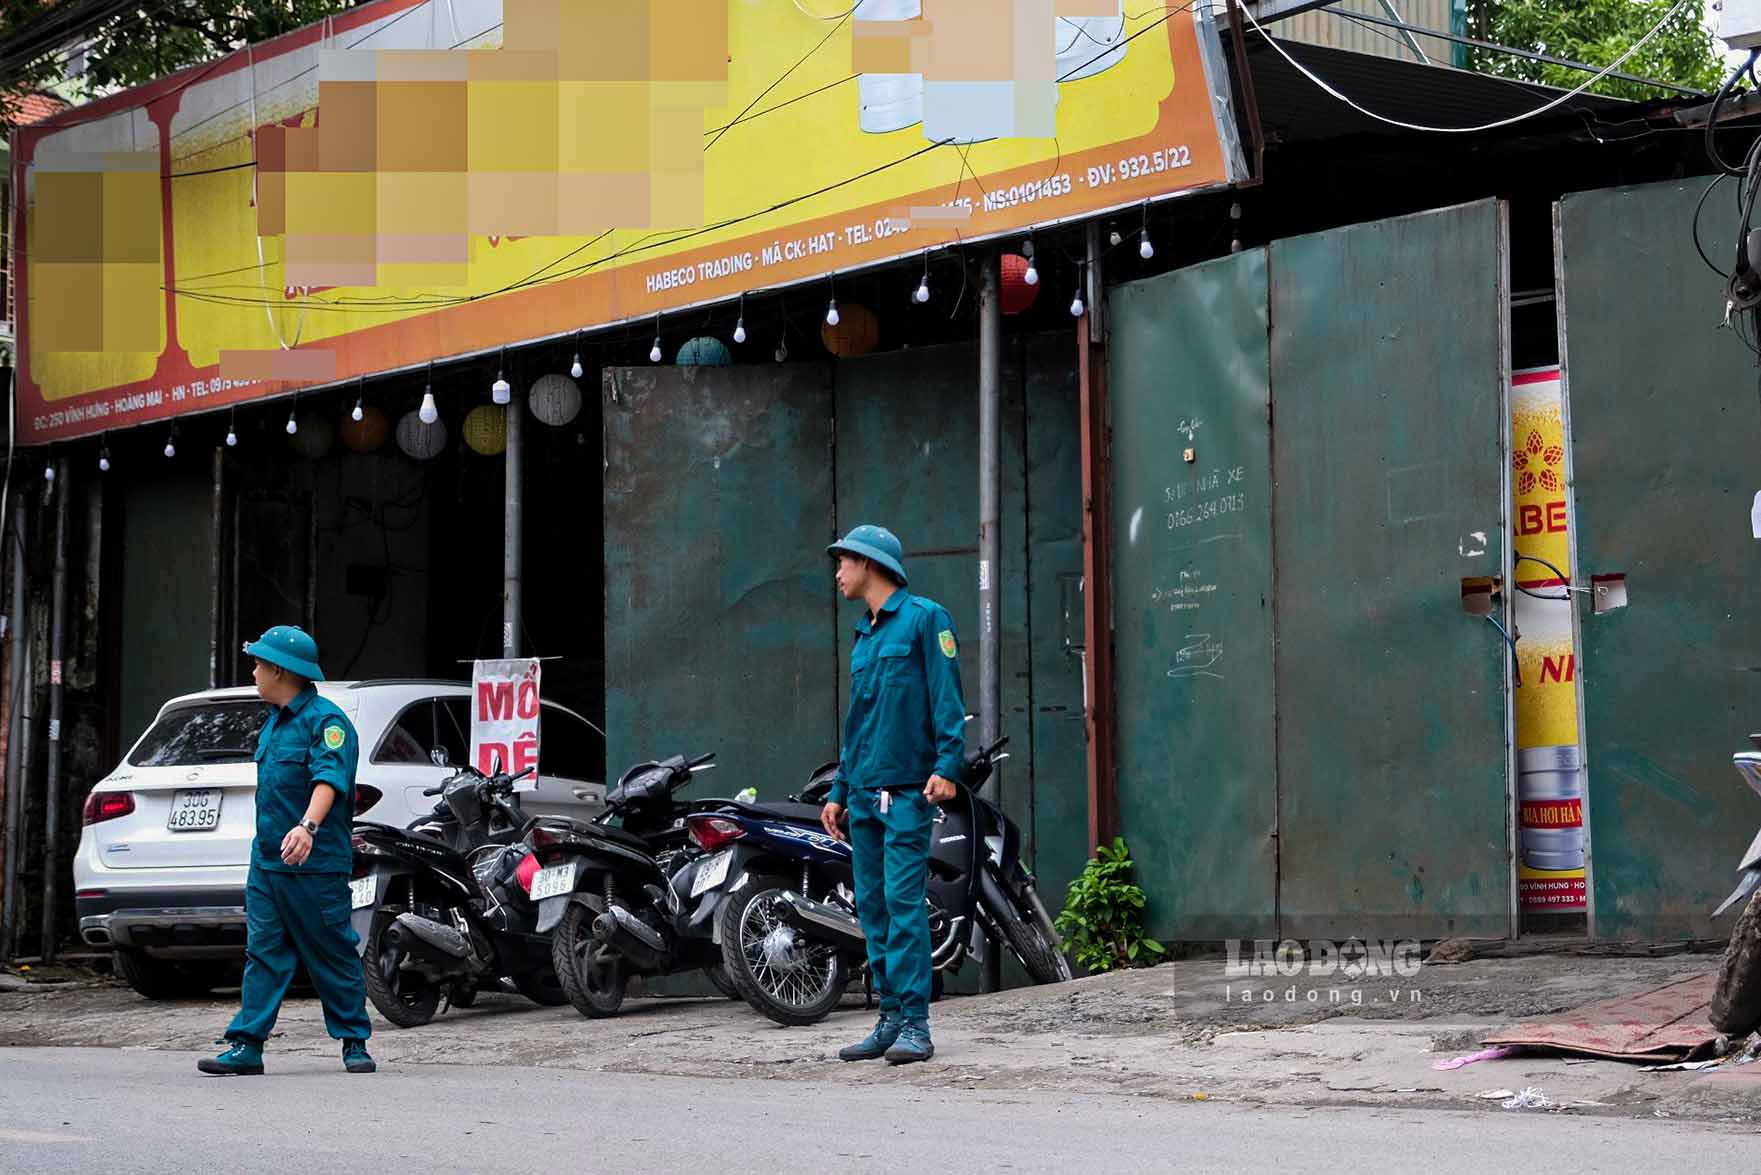 Trao đổi với Lao Động, lãnh đạo Công an phường Vĩnh Hưng cho biết, đơn vị này đang tiến hành bảo vệ hiện trường, giới hạn người ra vào để điều tra, làm rõ nguyên nhân dẫn đến vụ nổ khiến 2 người bị thương nặng.